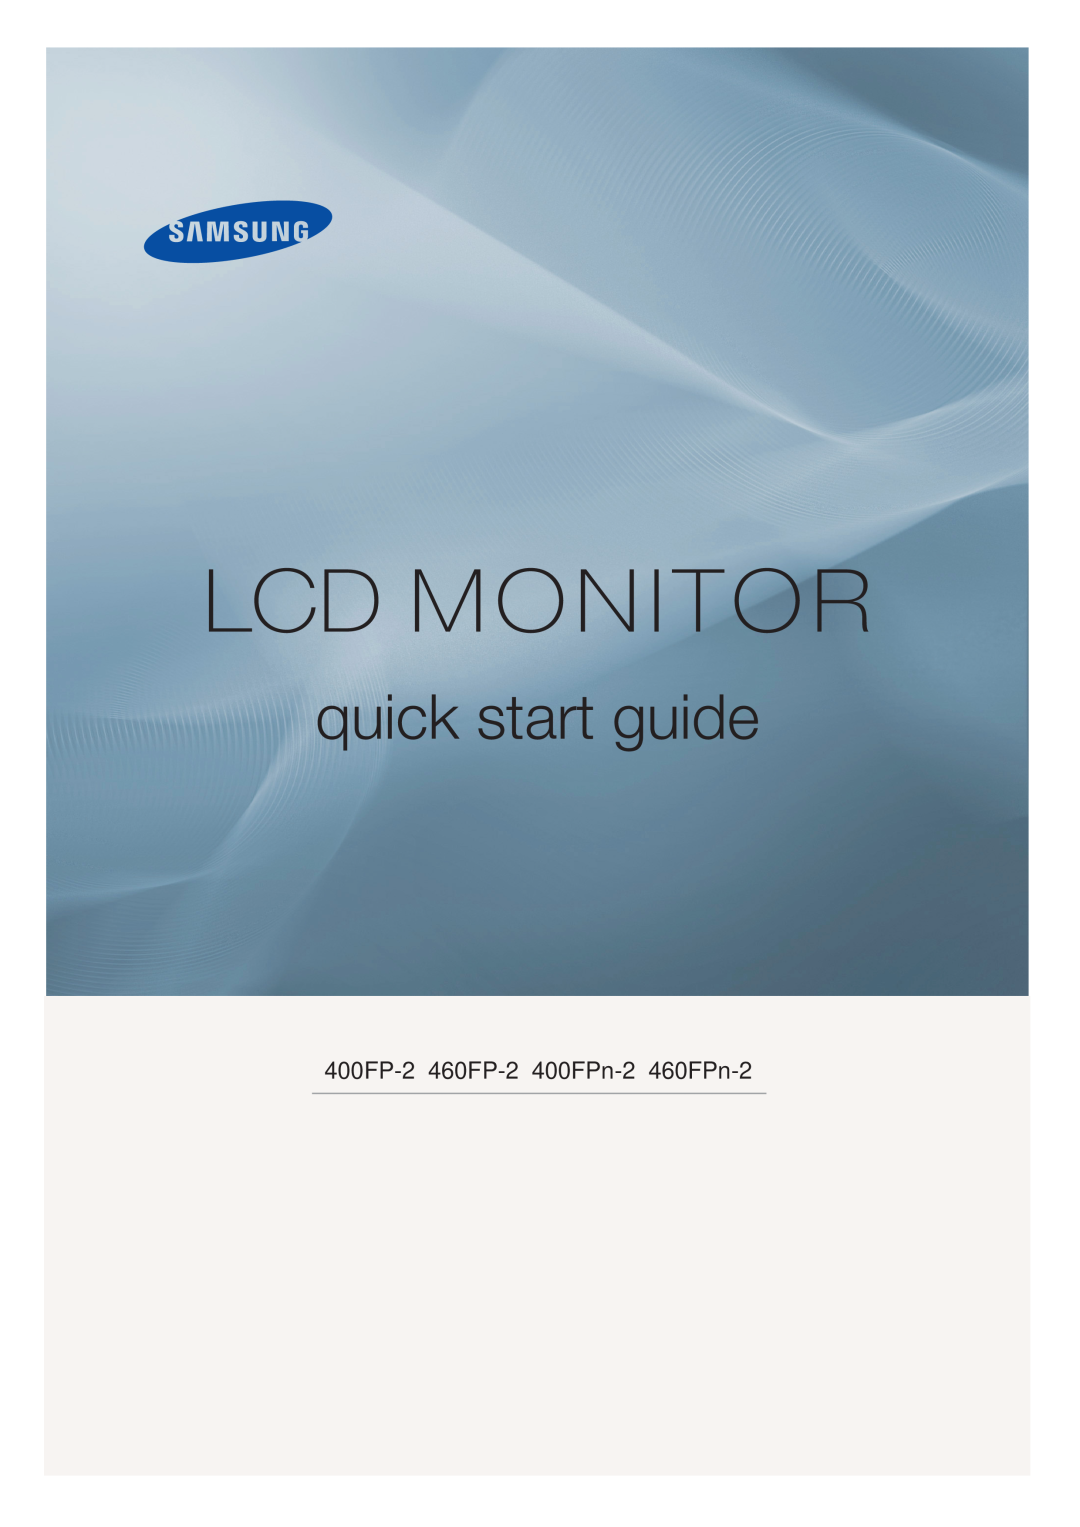 Samsung BN59-00806D-00 quick start Lcd Monitor, quick start guide, 400FP-2 460FP-2 400FPn-2 460FPn-2 